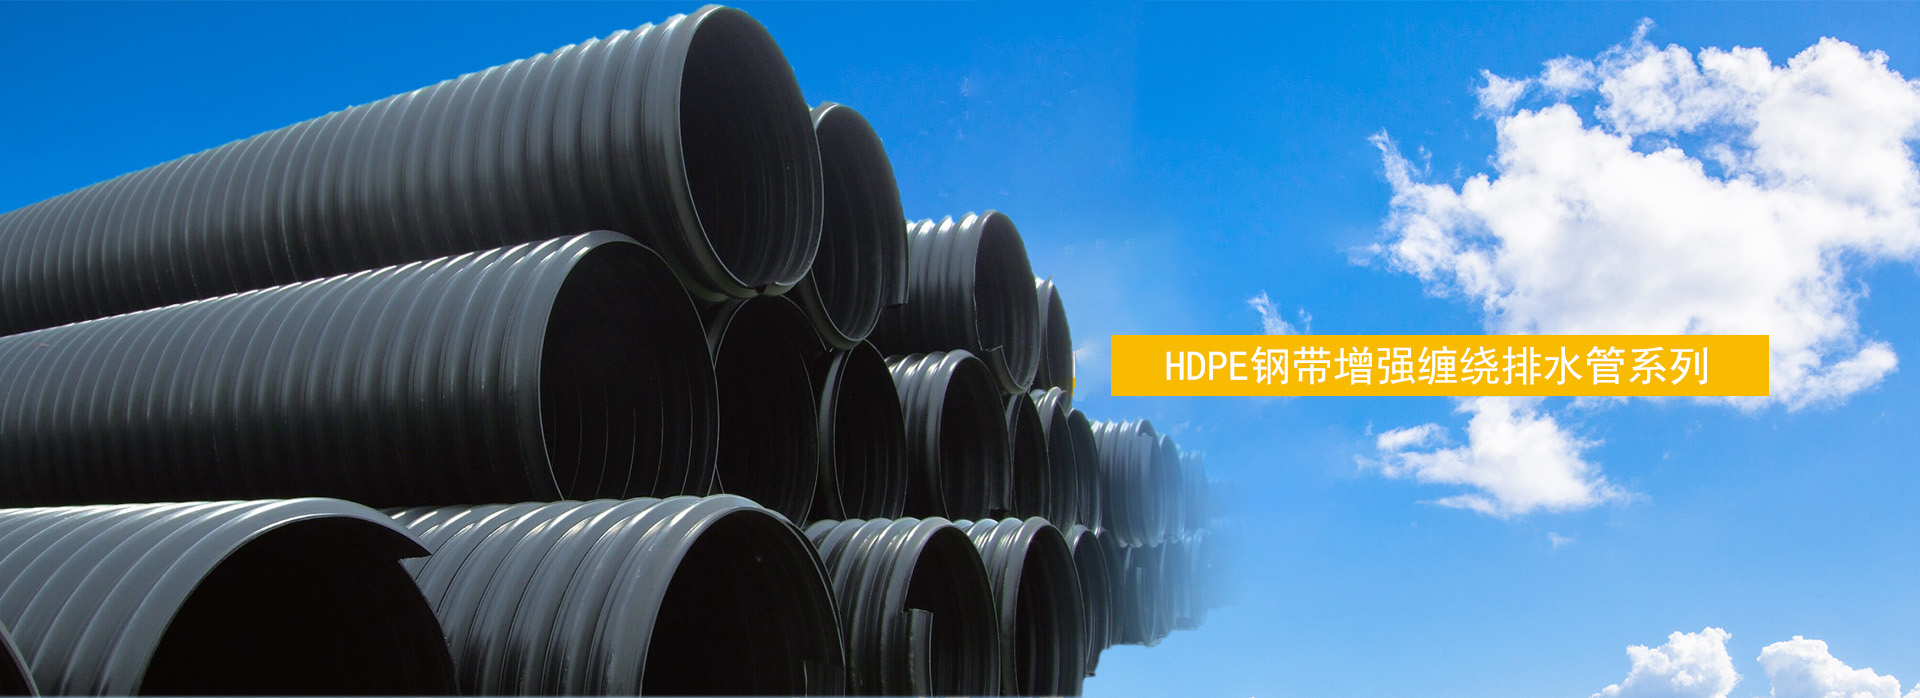 HDPE钢带增强缠绕排水管系列